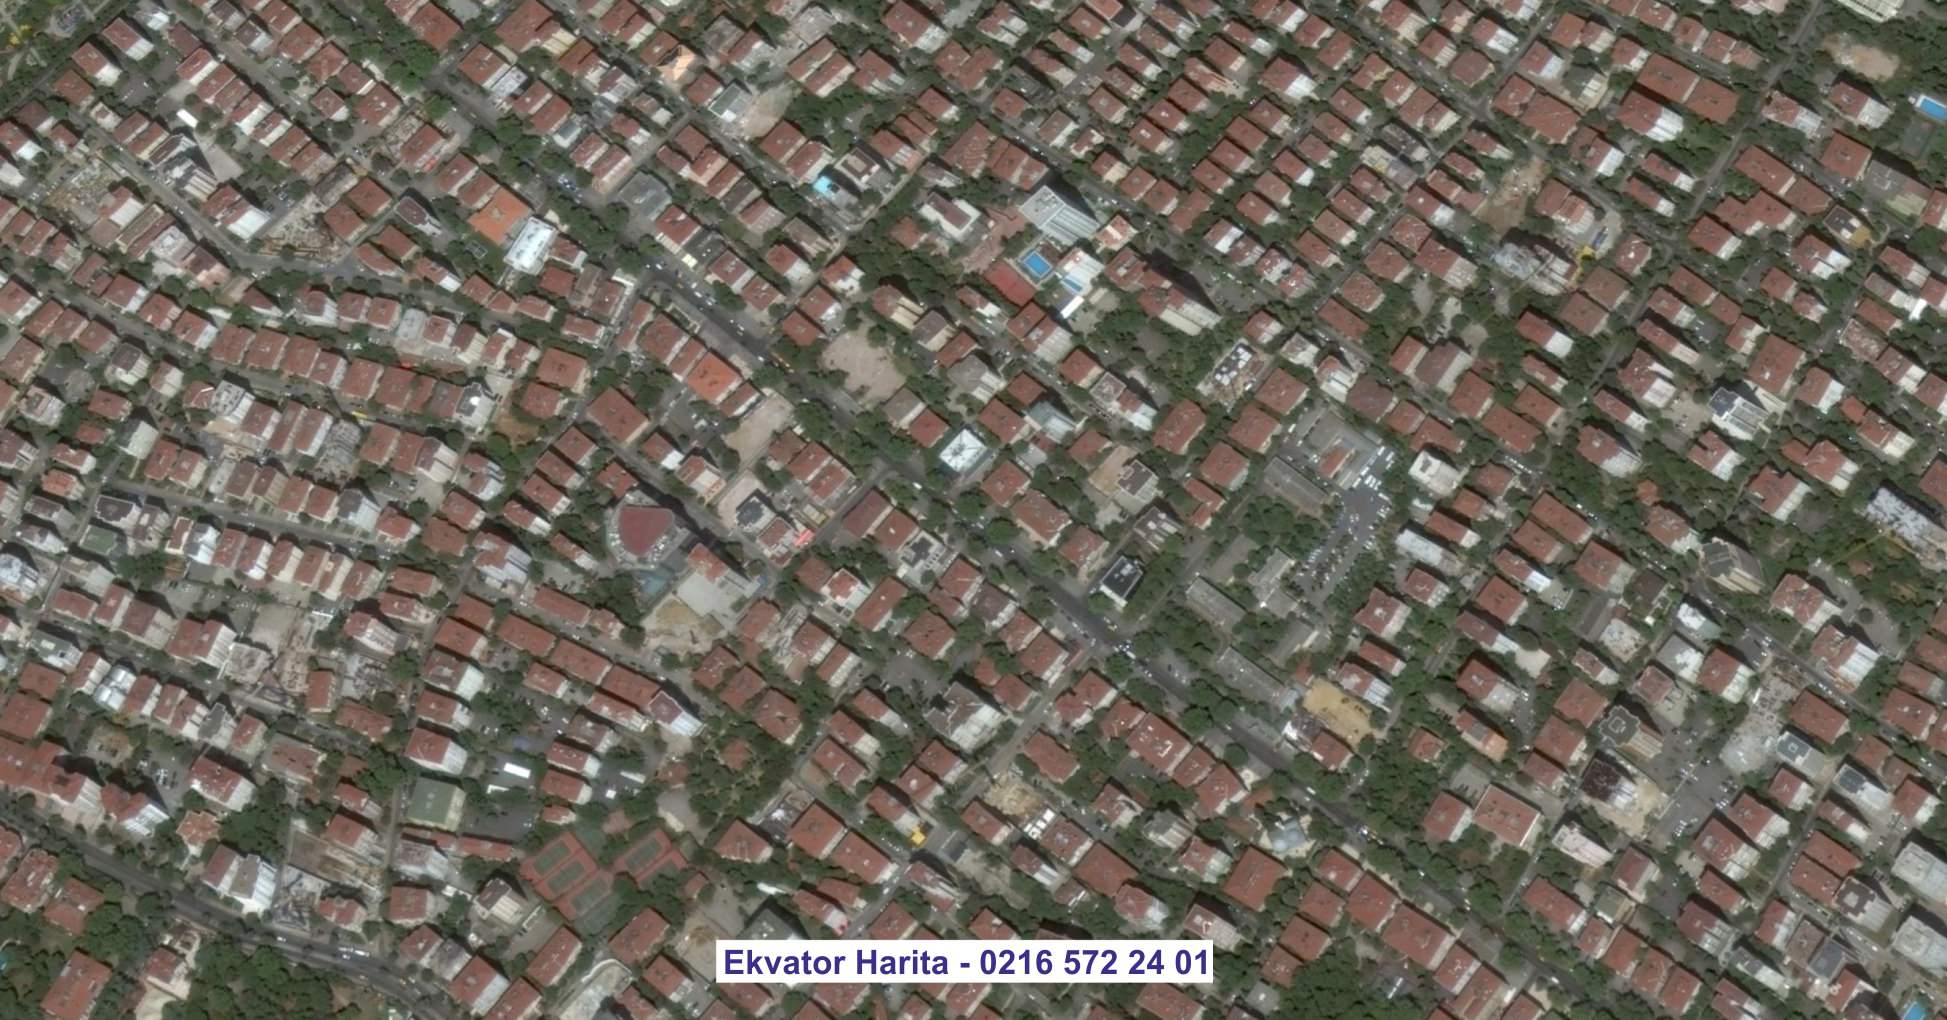 Sinop Uydu Görüntüsü Örnek Fotoğrafı